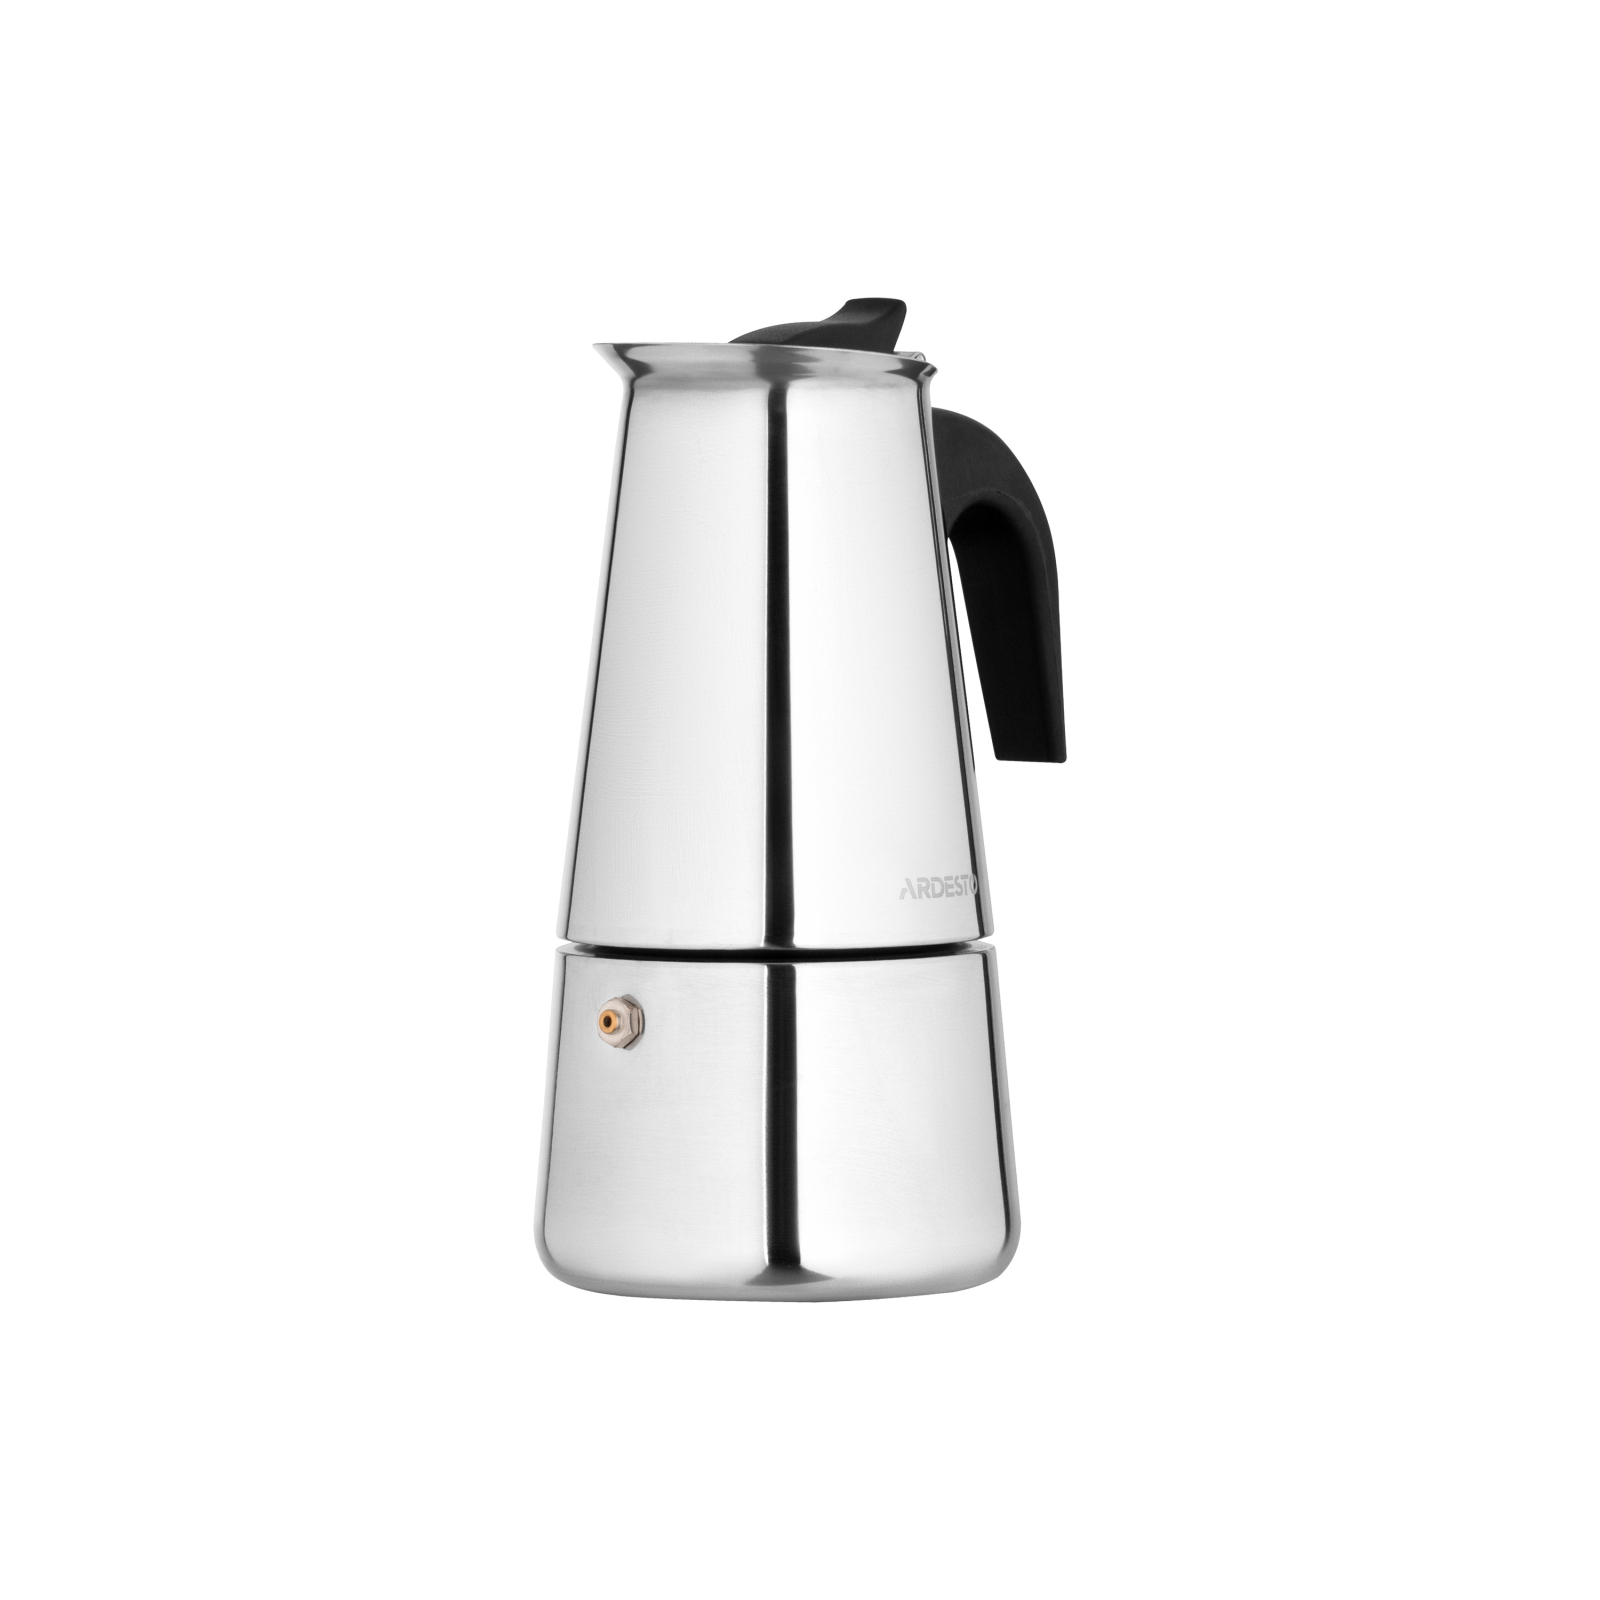 Гейзерная кофеварка Ardesto Gemini Apulia 4 чашки (AR0804SS) изображение 6